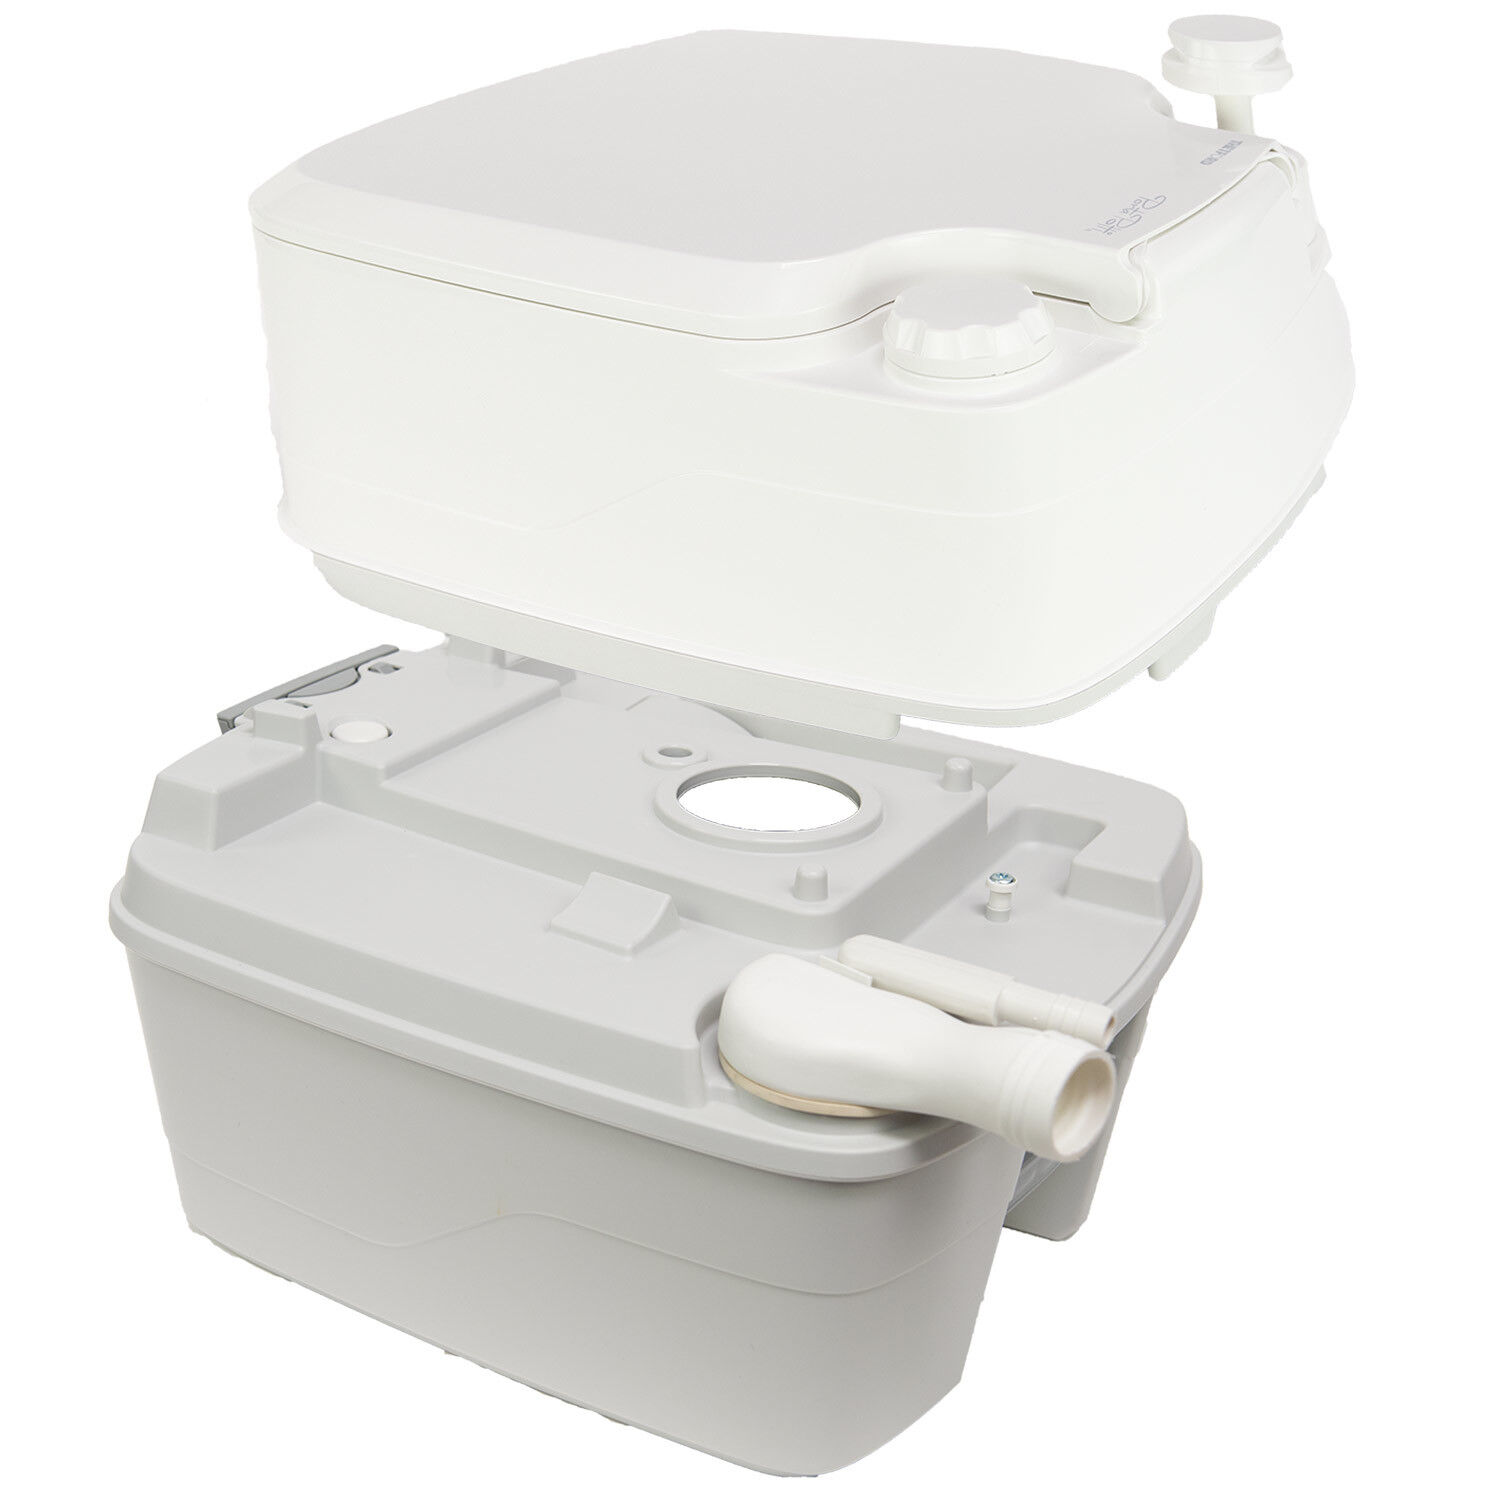 Thetford Porta Potti 550P MSD Portable Toilet 92856 